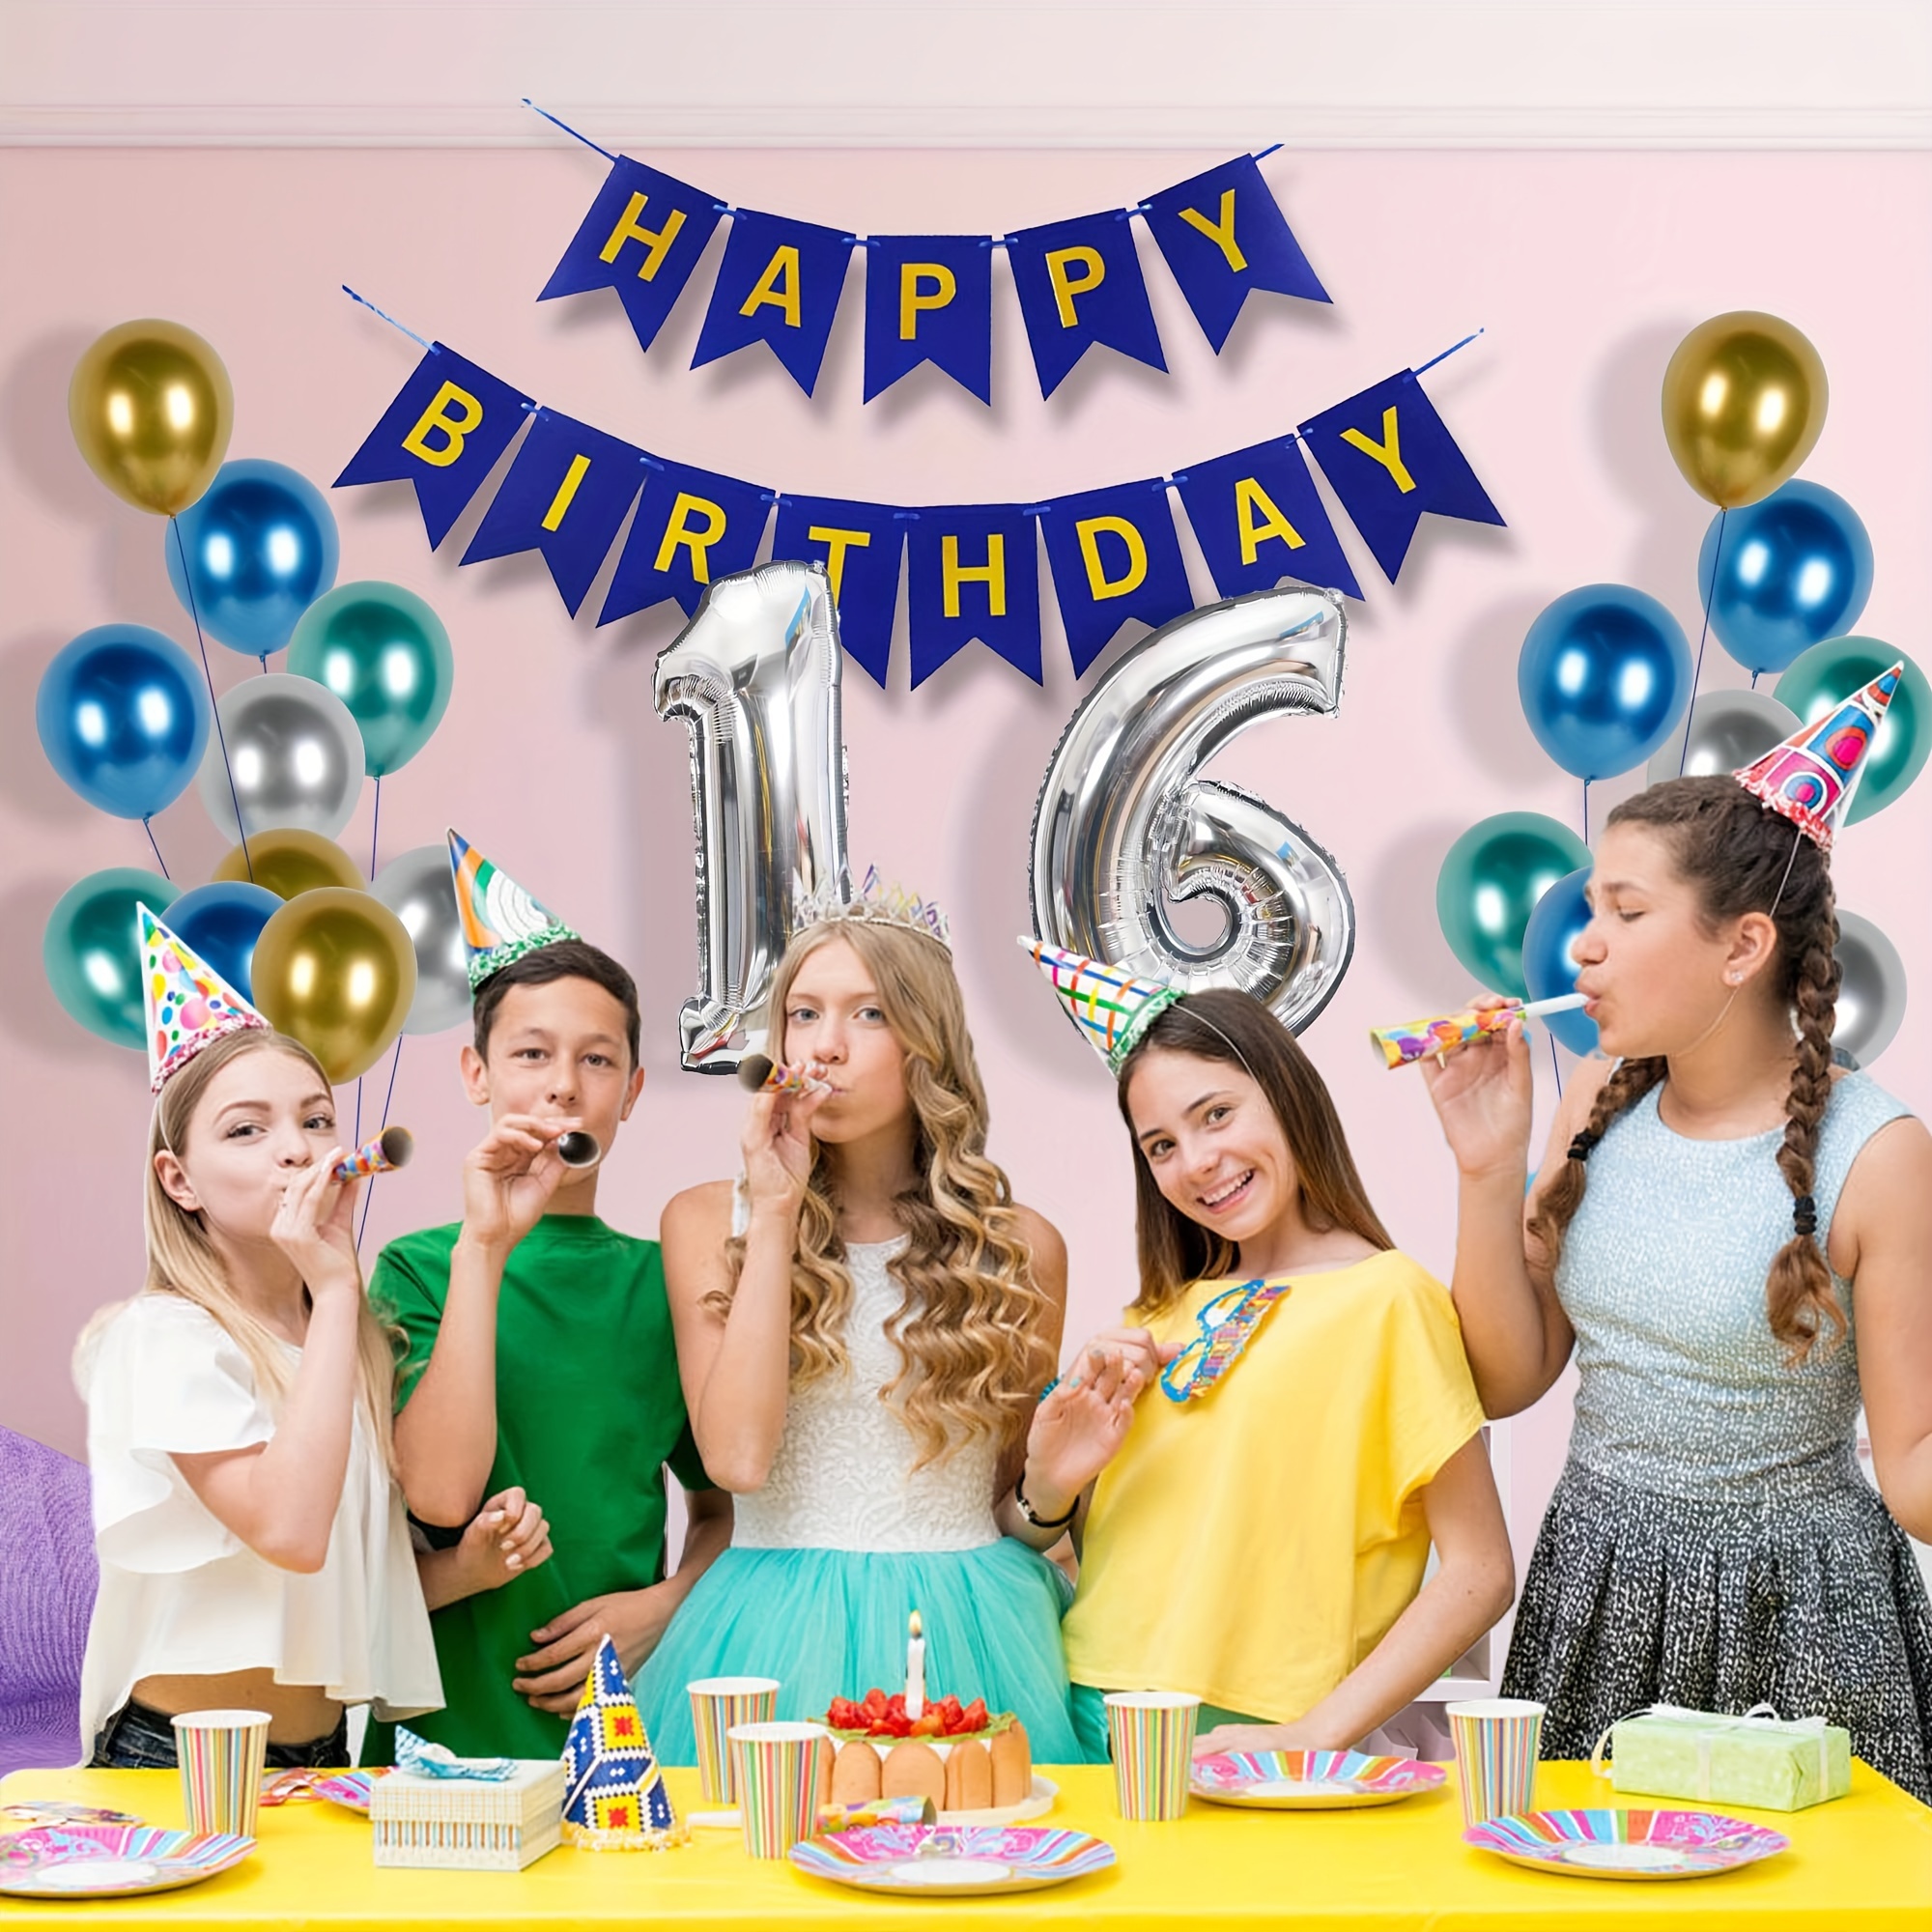  Decoraciones de cumpleaños número 18 para niños y niñas, color  azul oscuro, pancarta de feliz cumpleaños con globos plateados del número 18,  fiesta temática azul oscuro para él, kit de suministros